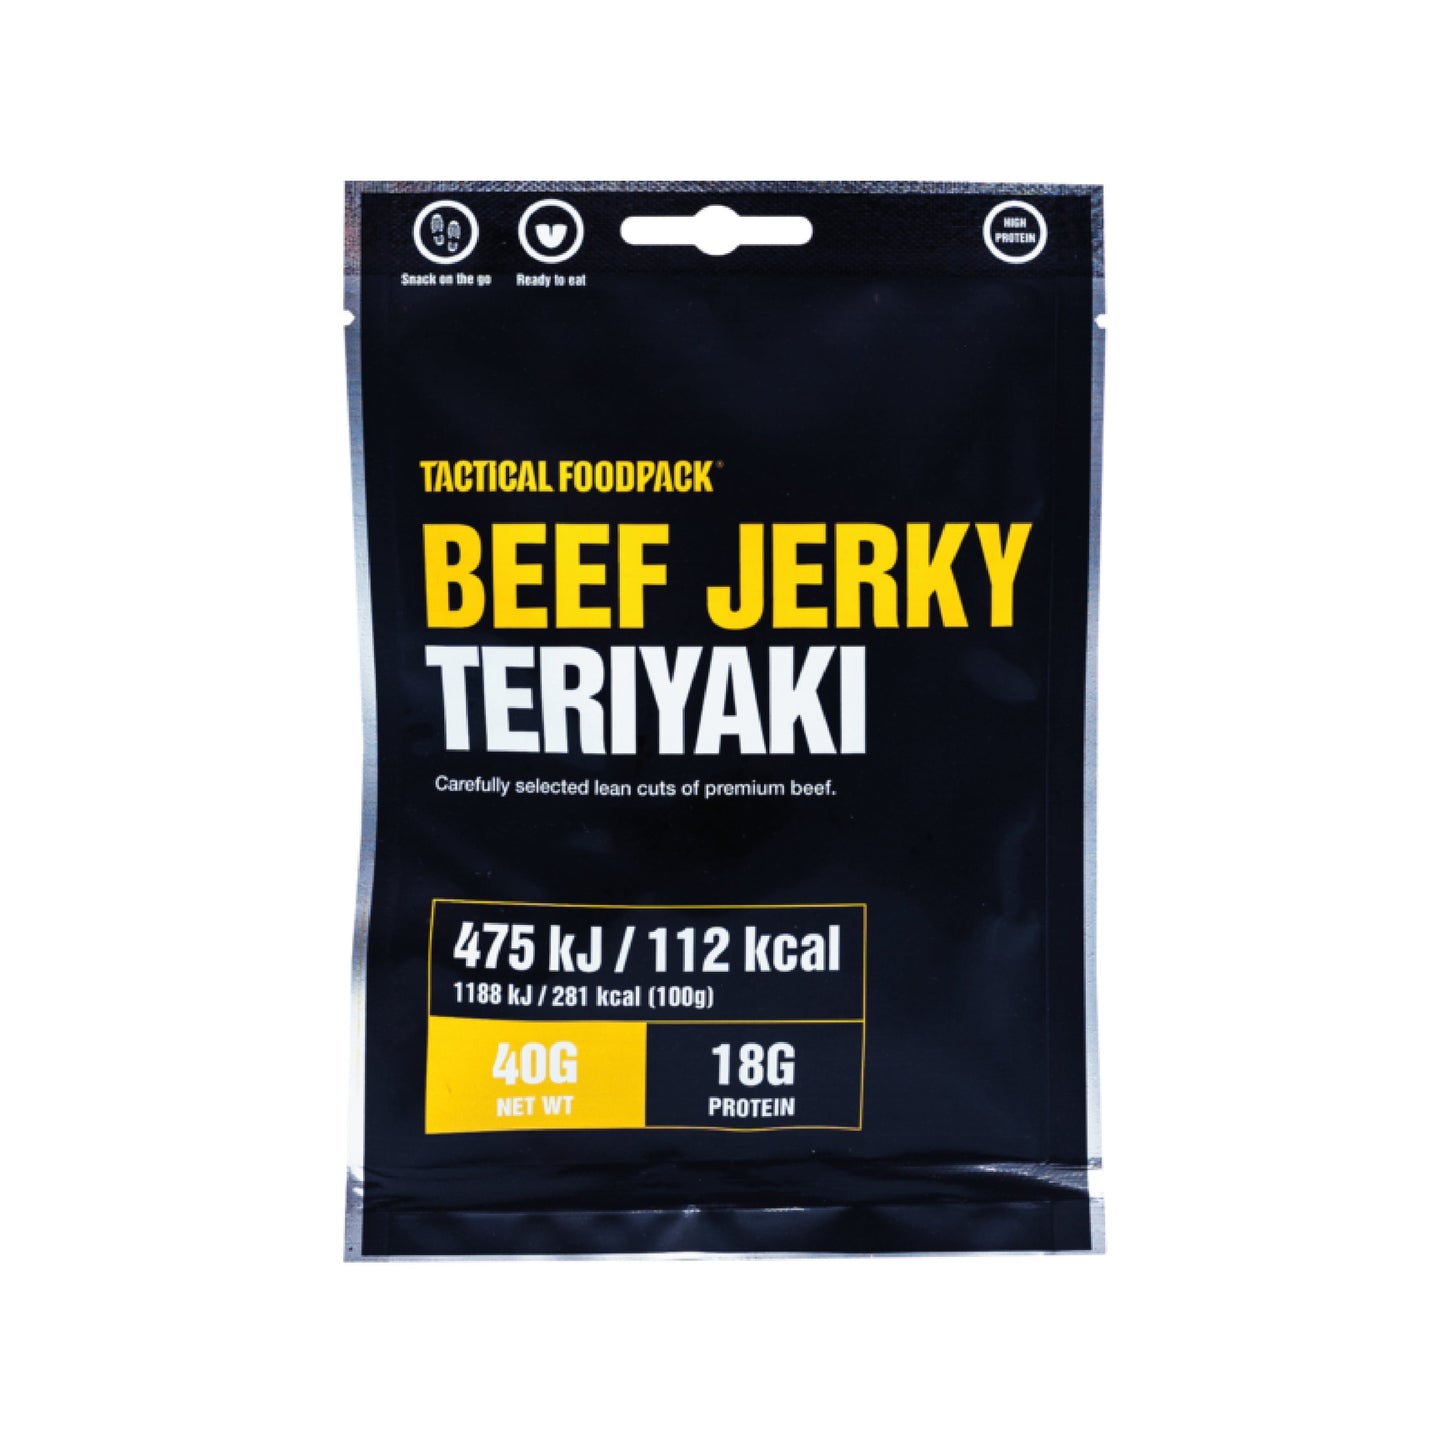 TACTICAL FOODPACK® Beef Jerky Teriyaki 40g